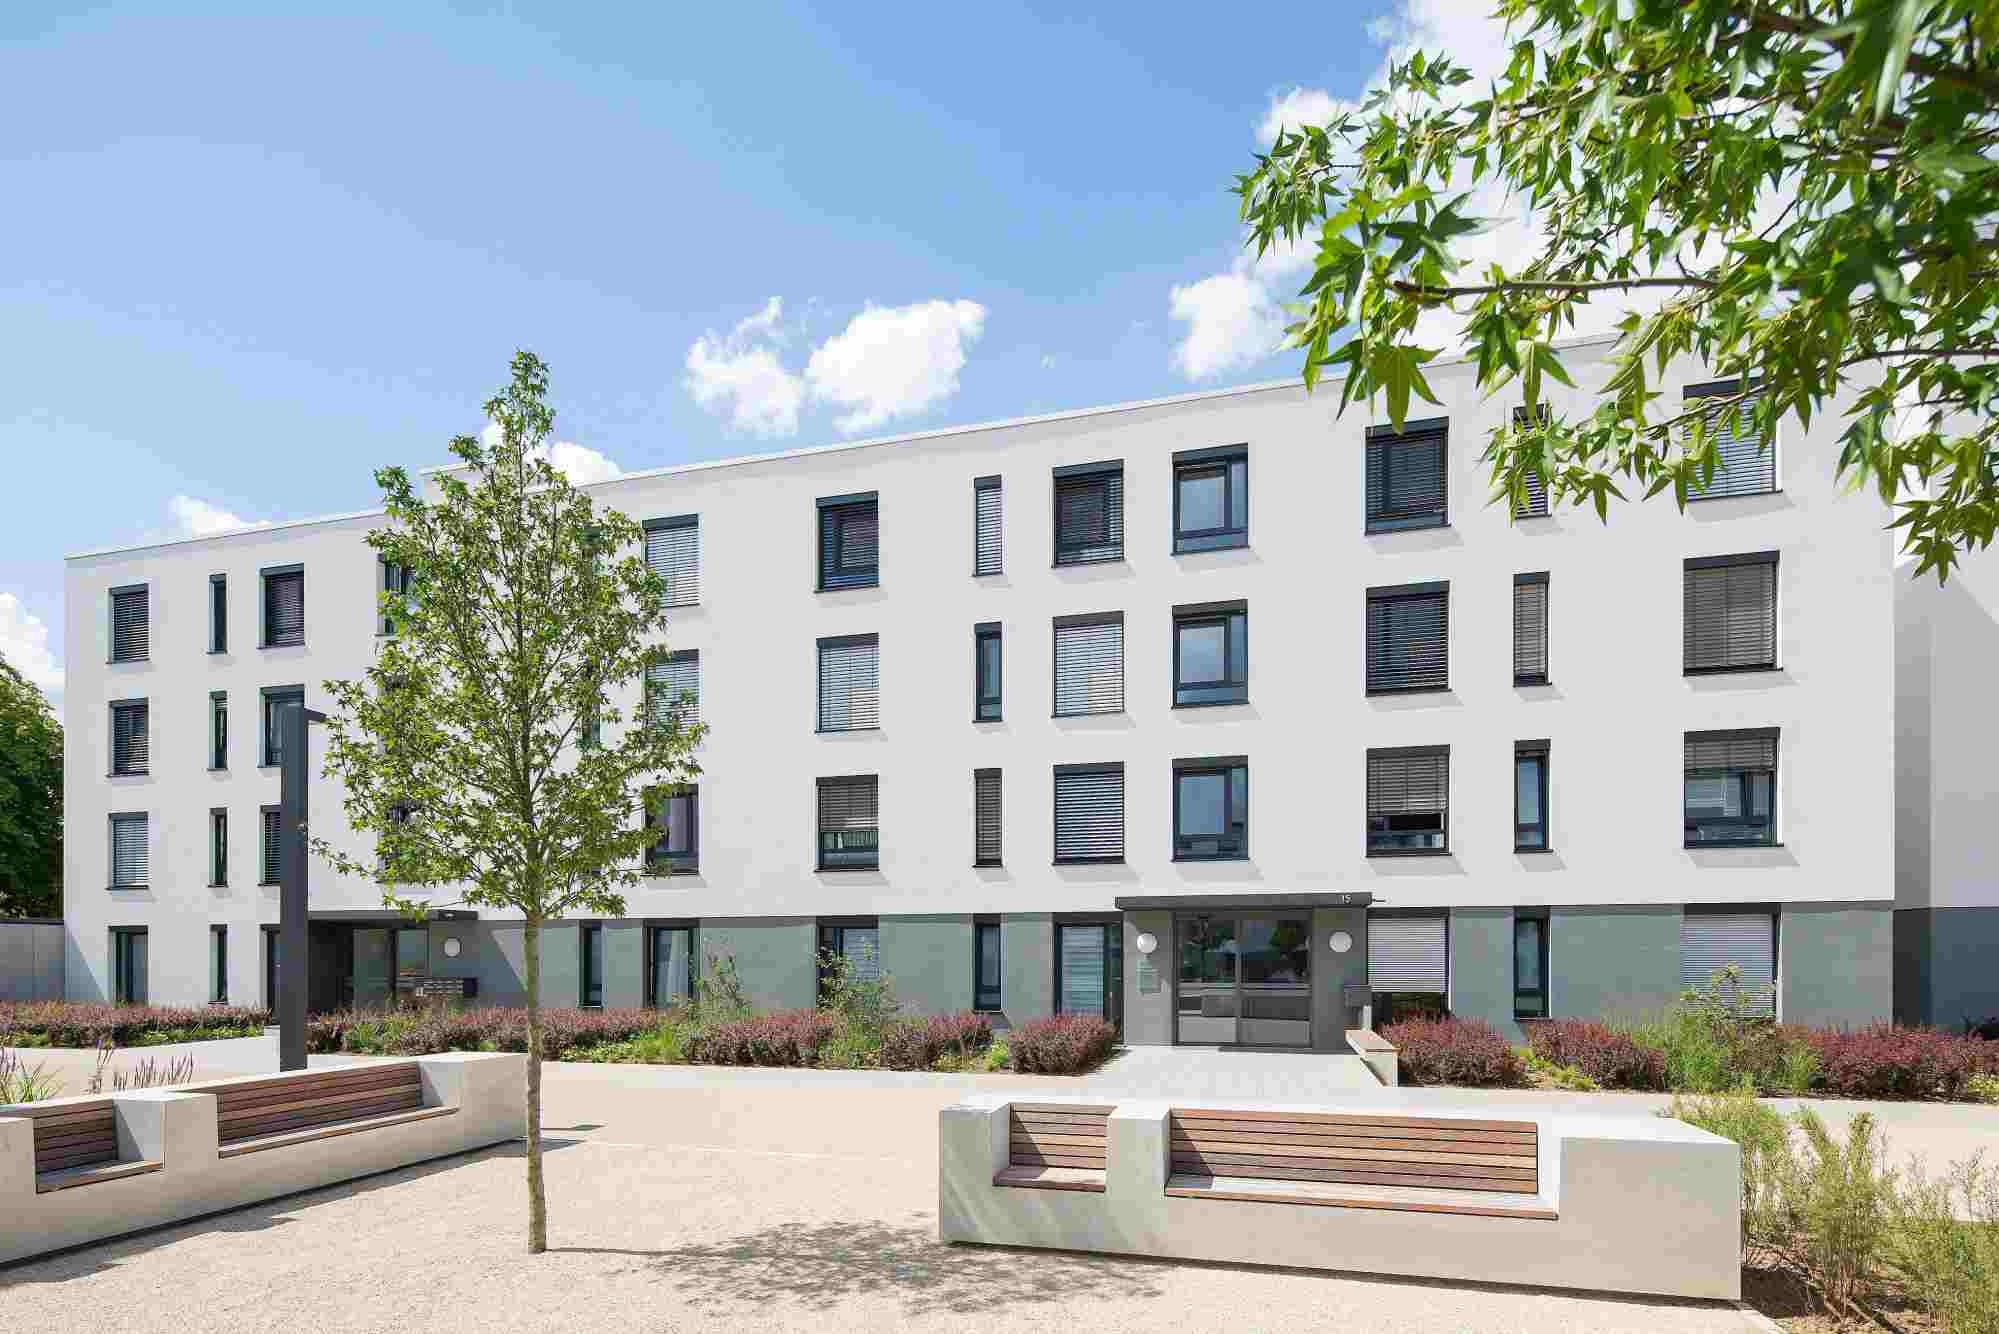 Wohngebäude des Cavalier Holstein in Mainz, weiße Fassade und Flachdach, Sitzbänke und Bäume im Vordergrund